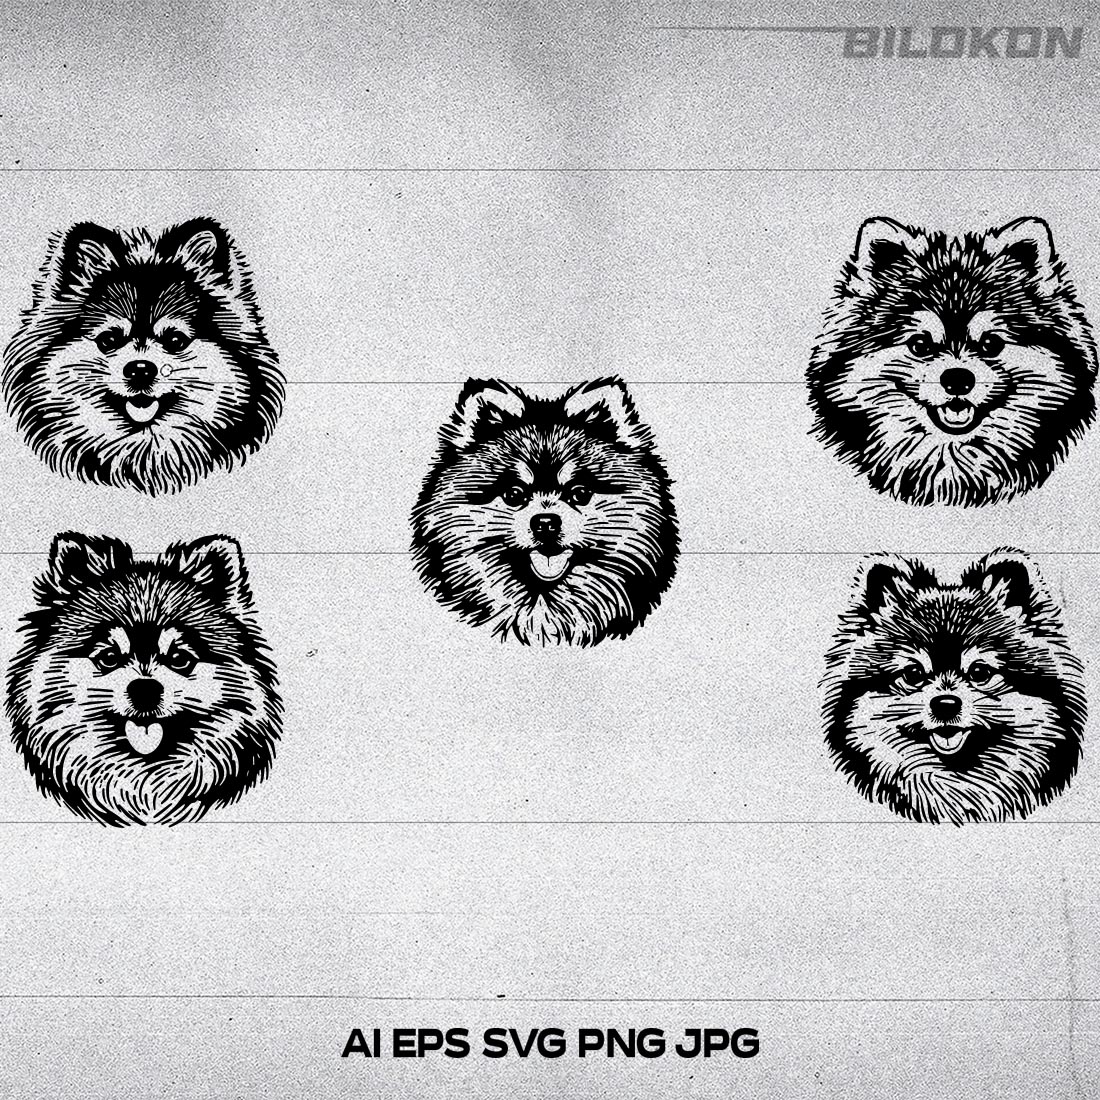 Pomeranian spitz dog head, SVG, Vector, Illustration, SVG Bundle cover image.